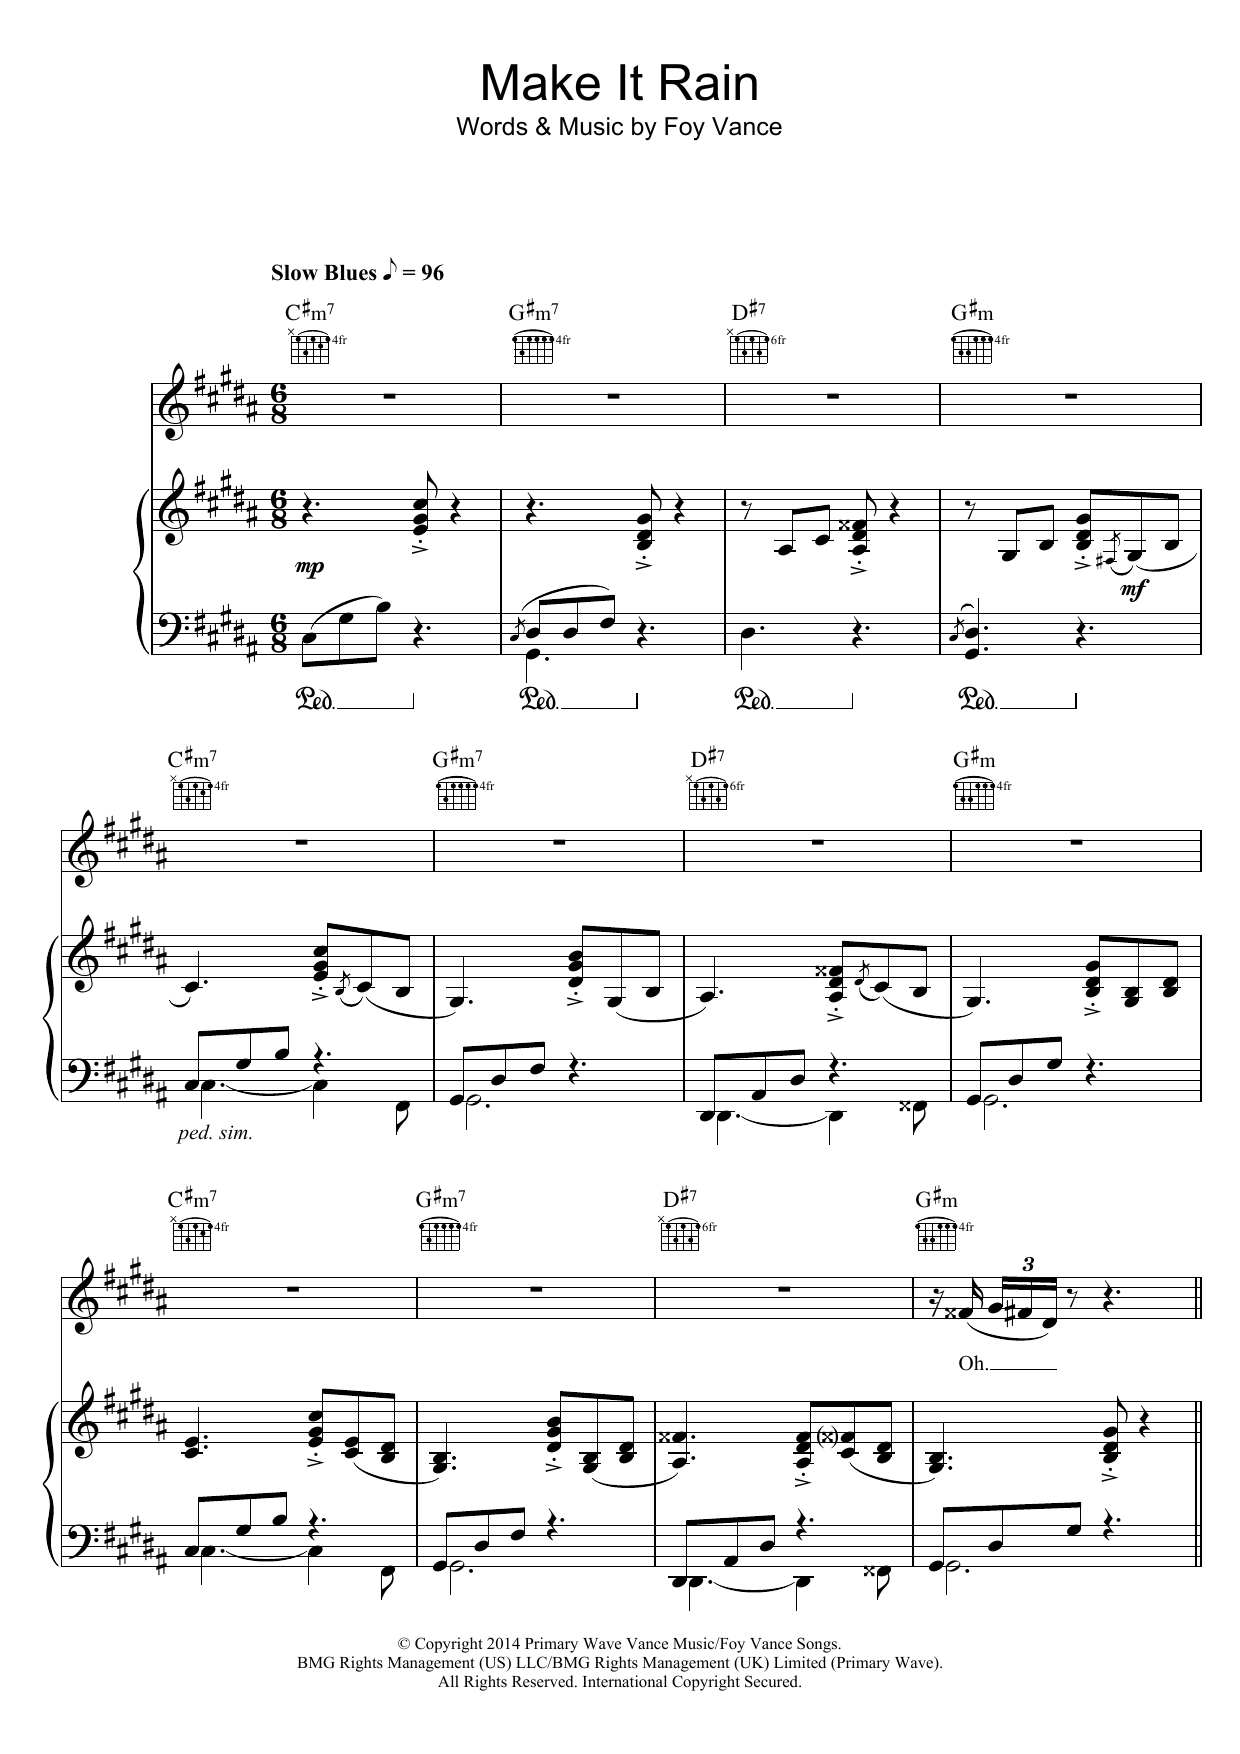 Ed Sheeran Make It Rain Sheet Music Notes & Chords for Lyrics & Chords - Download or Print PDF